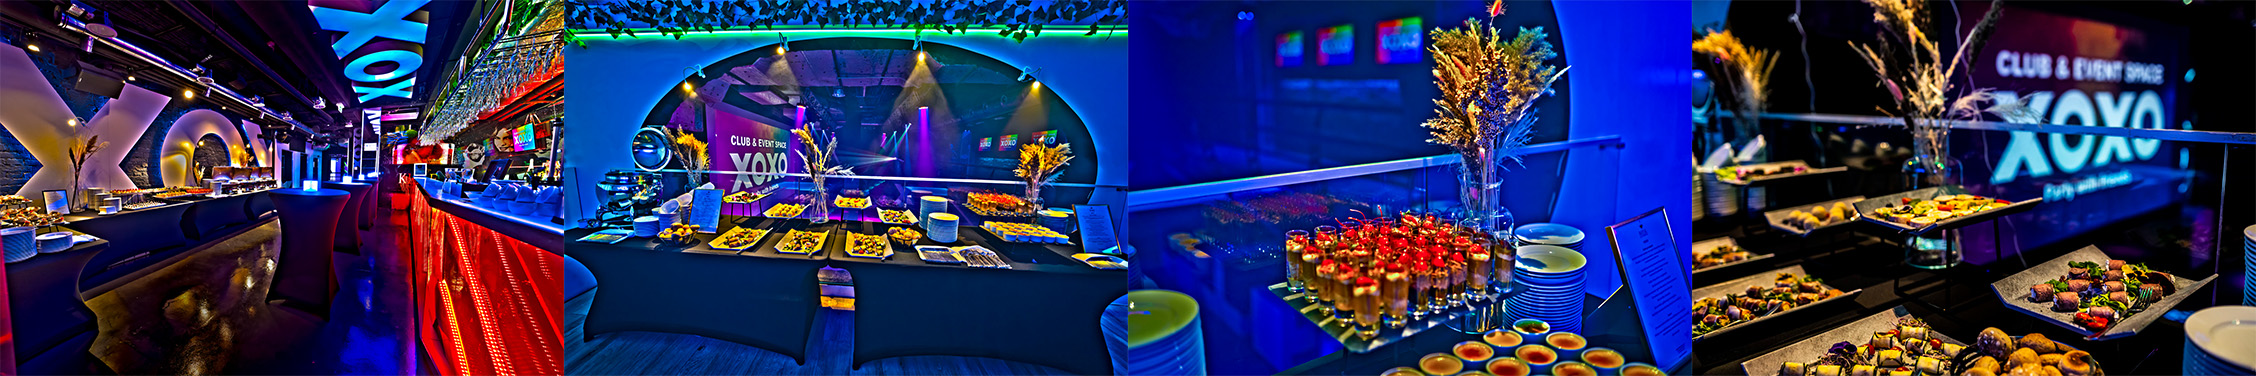 Dekoracje i oświetlenie na bankiety firmowe w klubie XOXO Party 